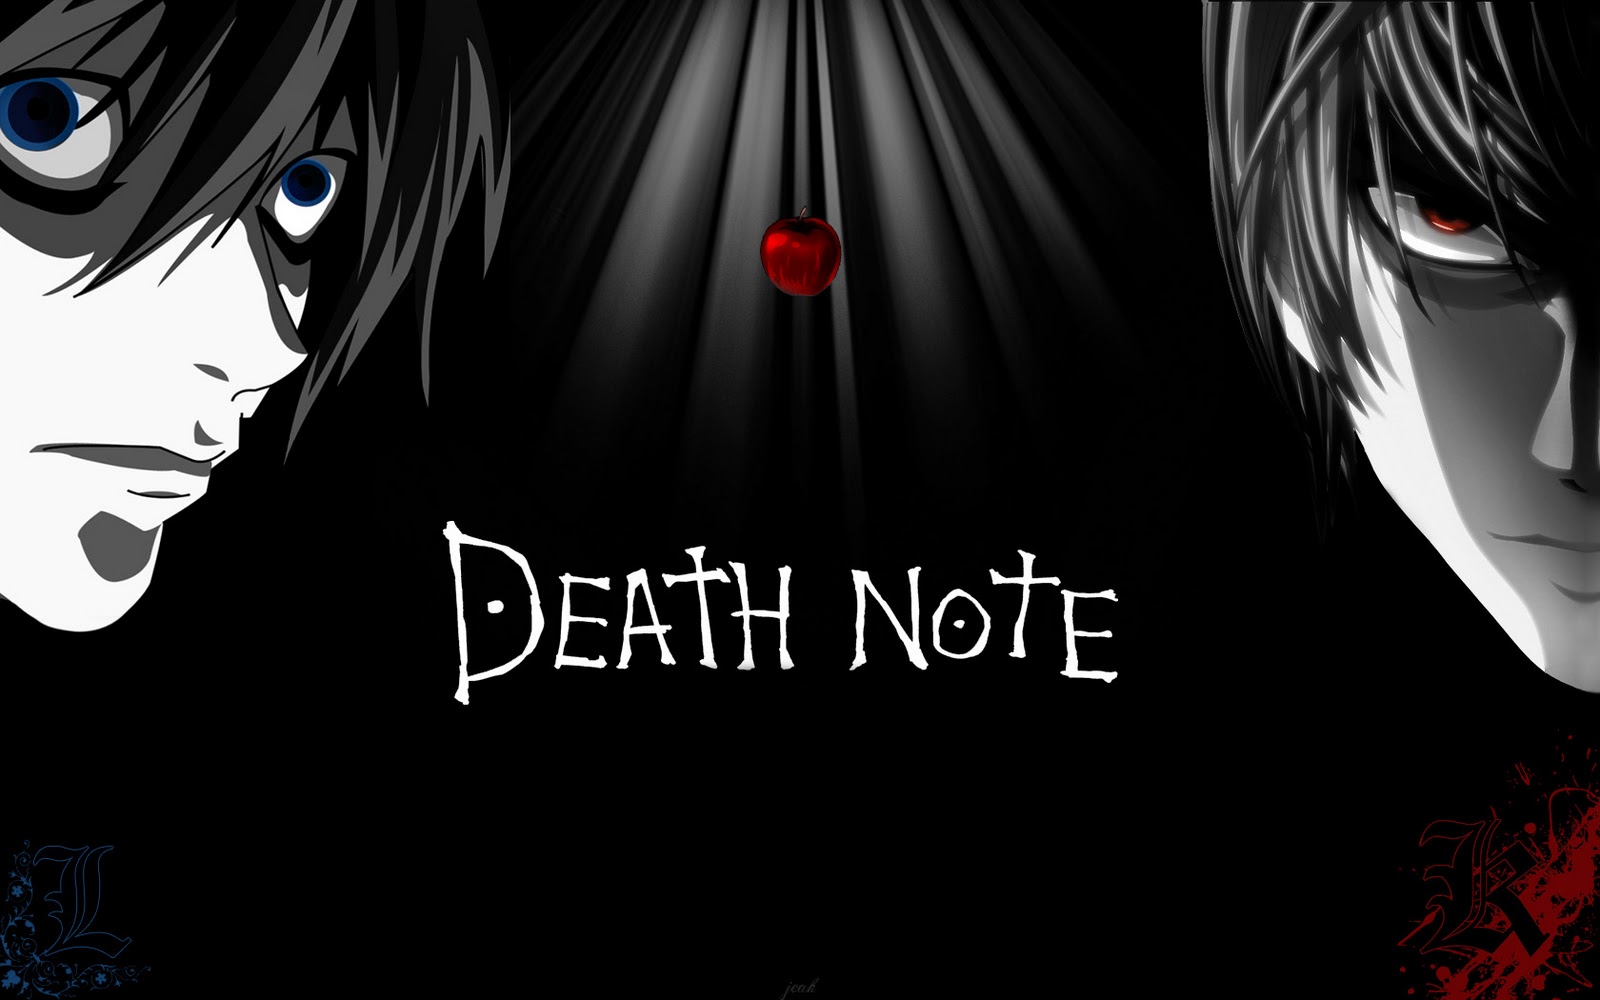 http://3.bp.blogspot.com/-vnxNzSwtqDU/TZsqGODSXQI/AAAAAAAAAME/B0xd8eVrIE0/s1600/Death_Note_Wallpaper_by_jeakiller.jpg